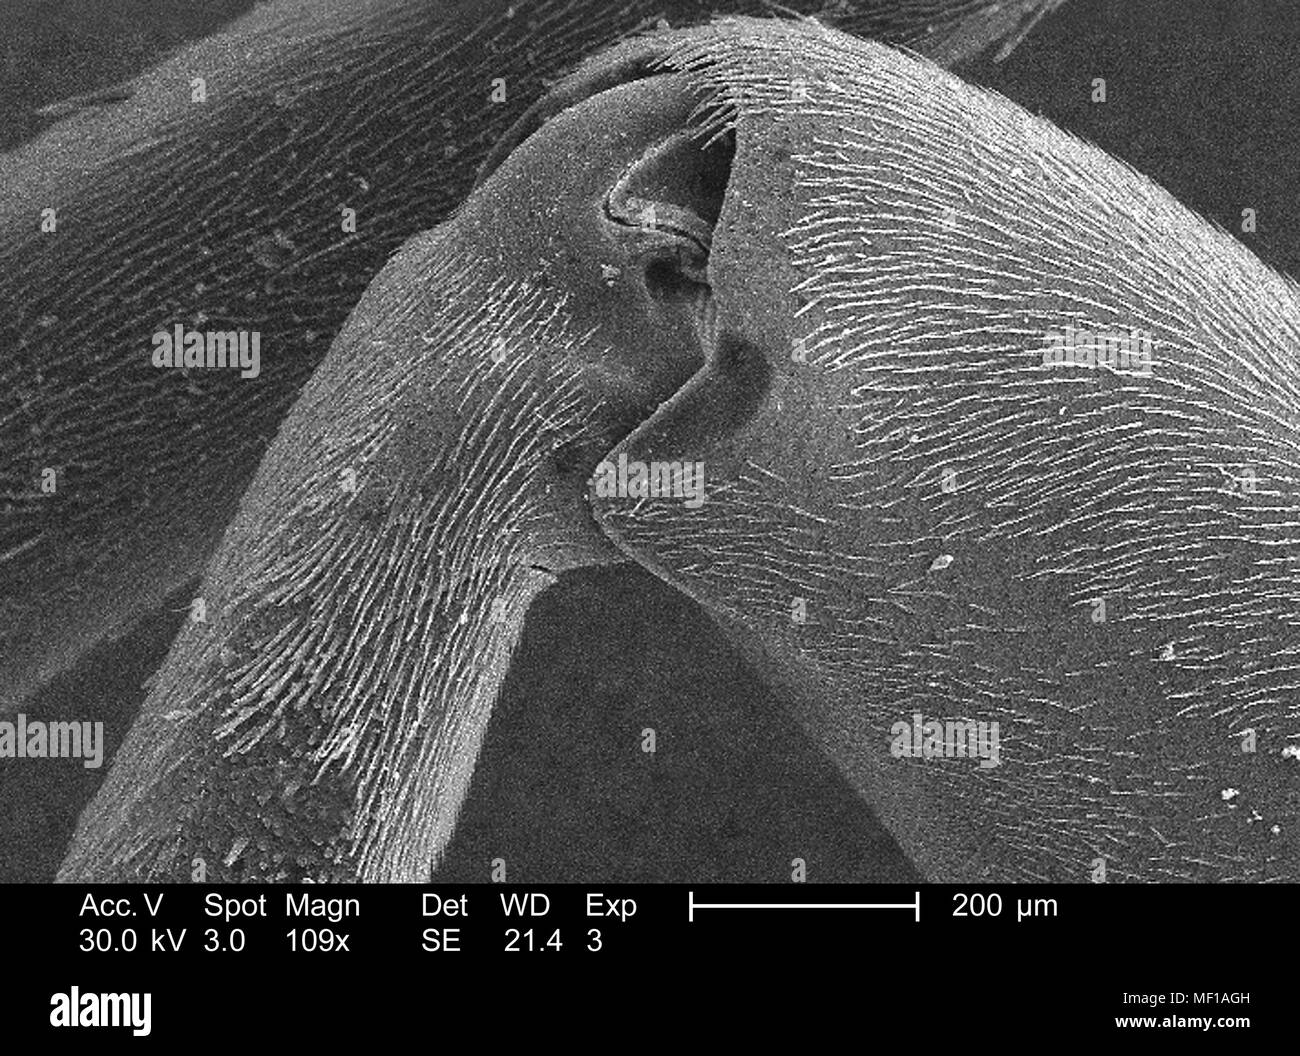 Unidentified wasp gamba rivestita con peli sensoriali (Setae), raffigurata in 109x di scansione ingrandita al microscopio elettronico (SEM) immagine, 2005. Immagine cortesia di centri per il controllo delle malattie (CDC) / Janice Haney Carr. () Foto Stock